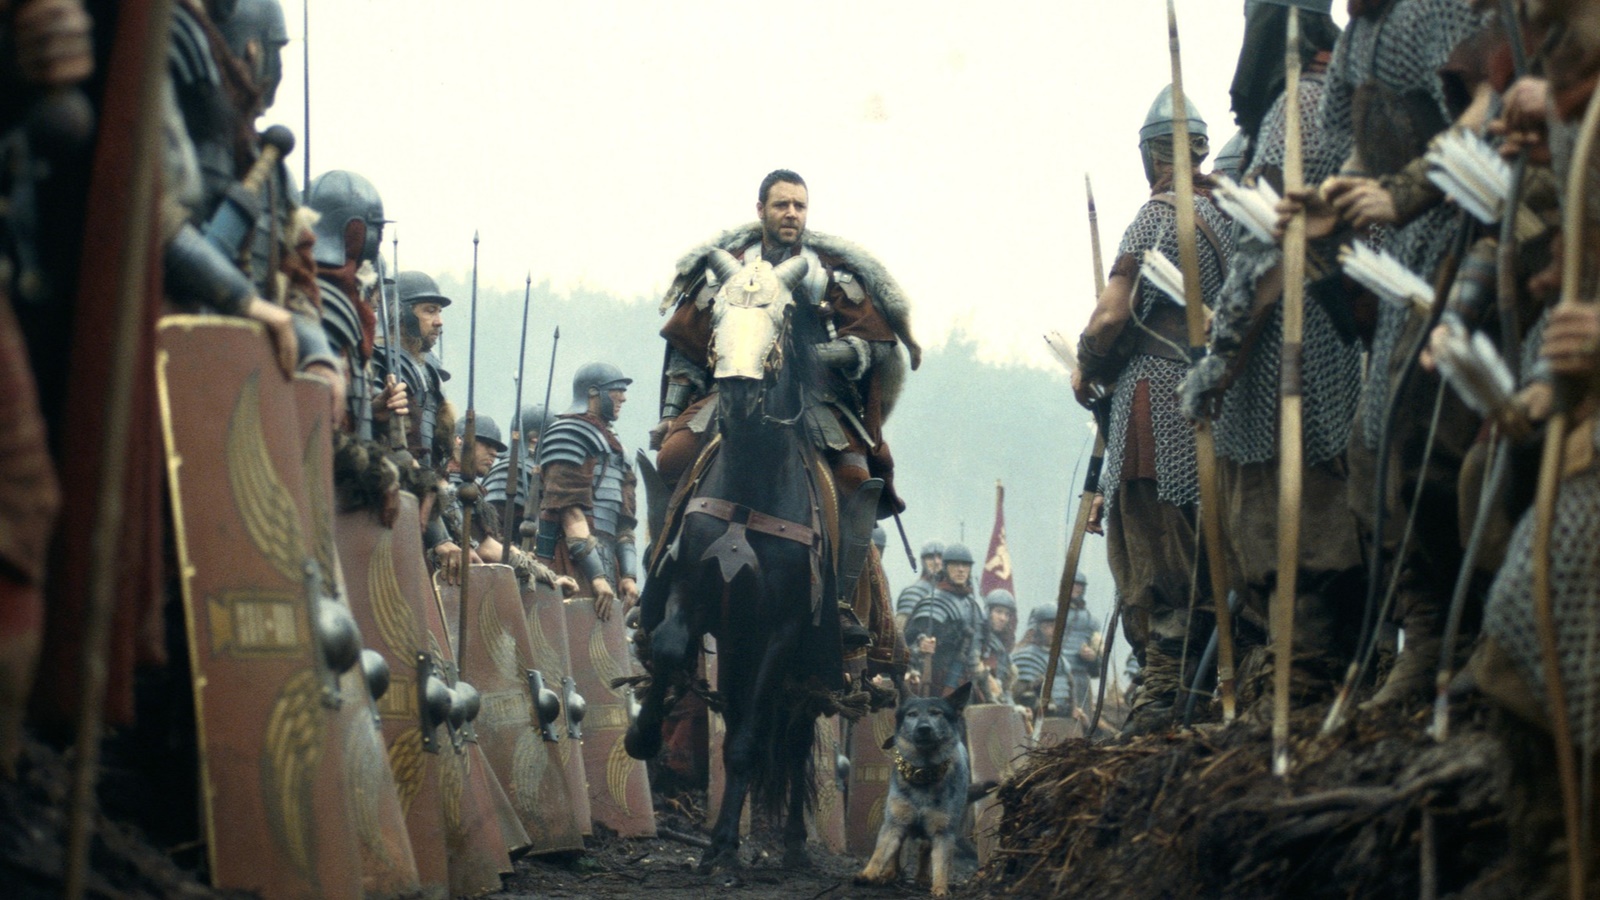 Il Gladiatore 2: un video dal set anticipa un'epica scena di battaglia